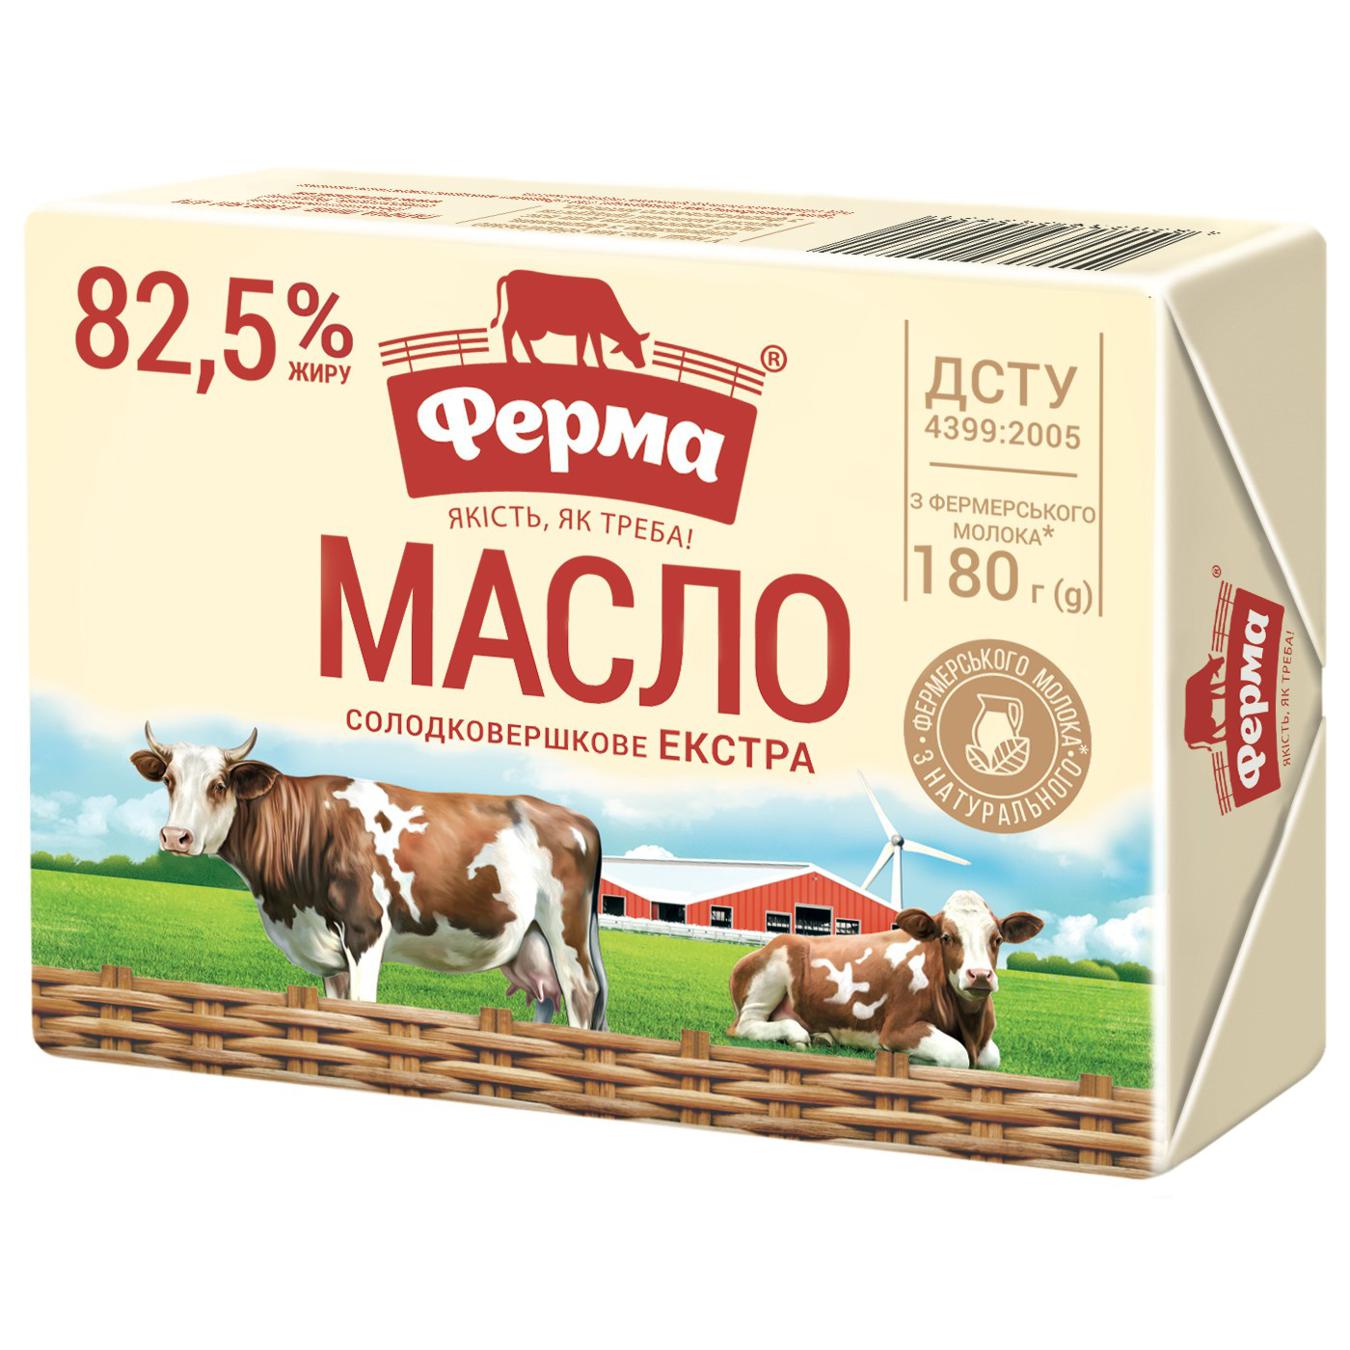 Масло Ферма Екстра солодковершкове 82.5% 180г